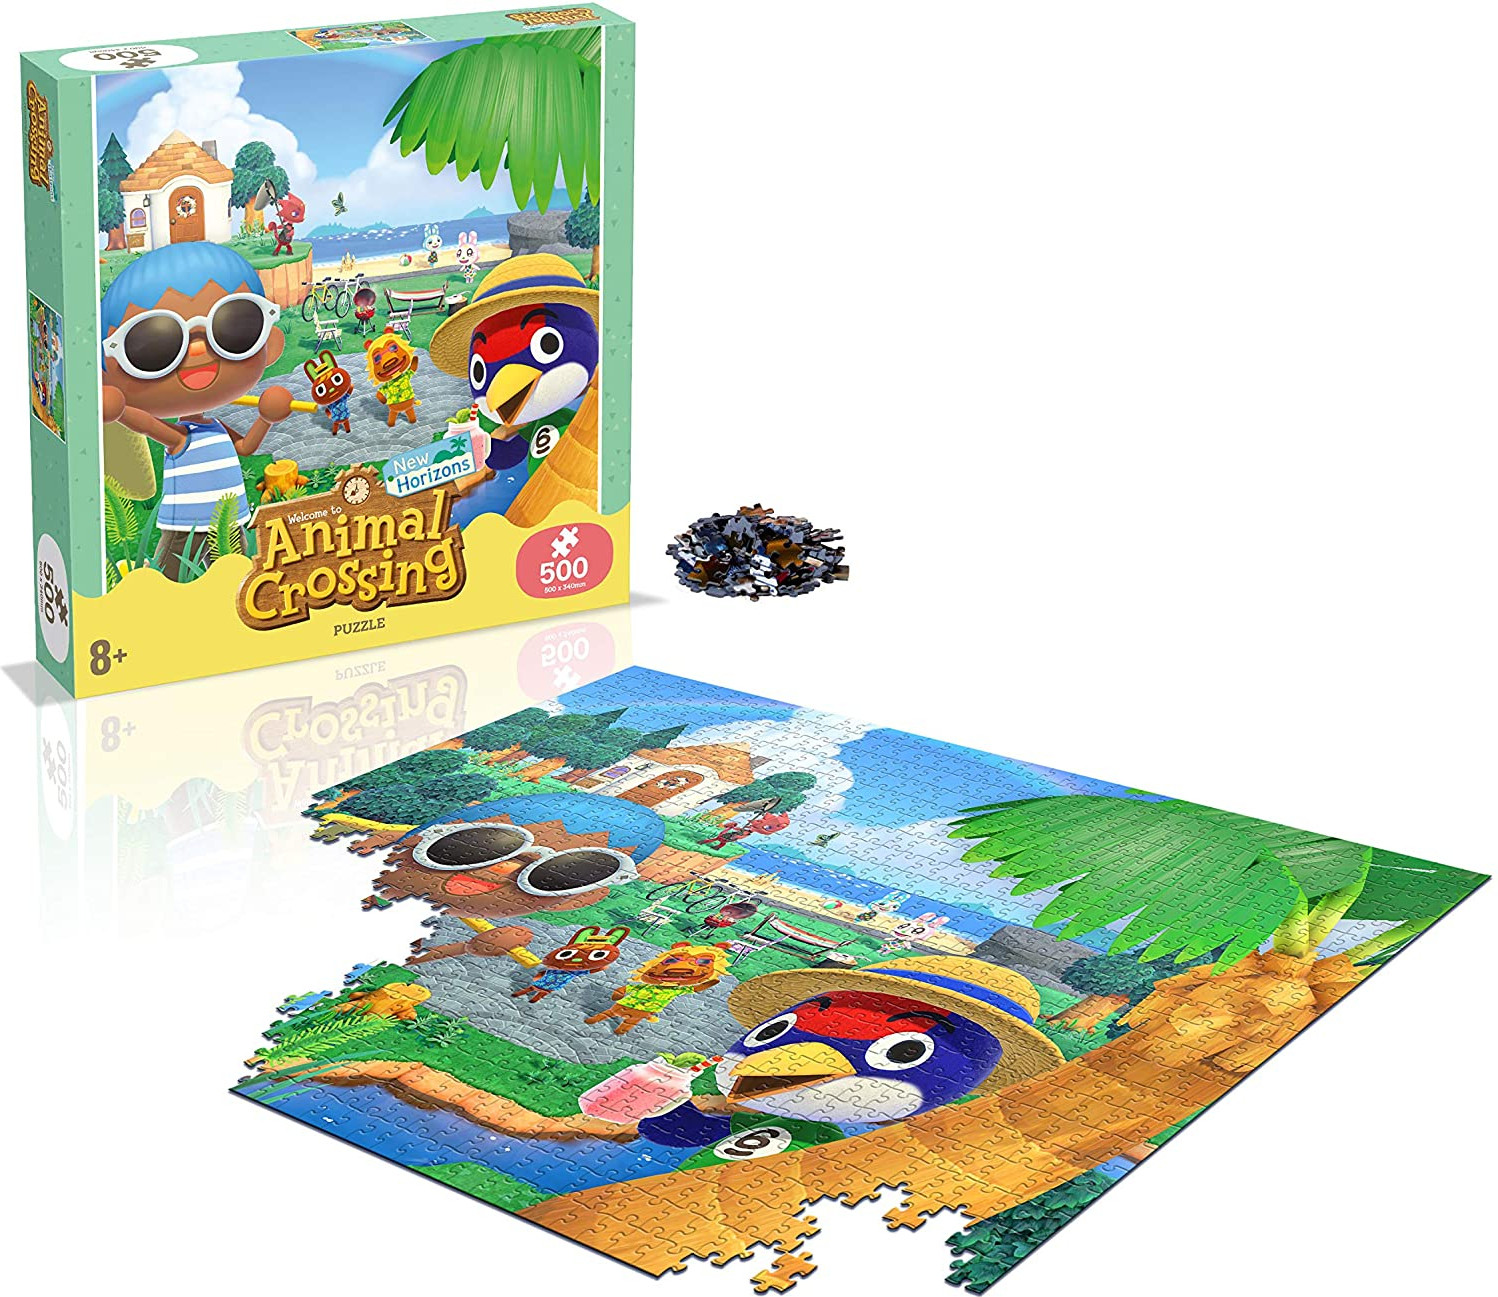 Animal Crossing Puzzel 500 stukjes